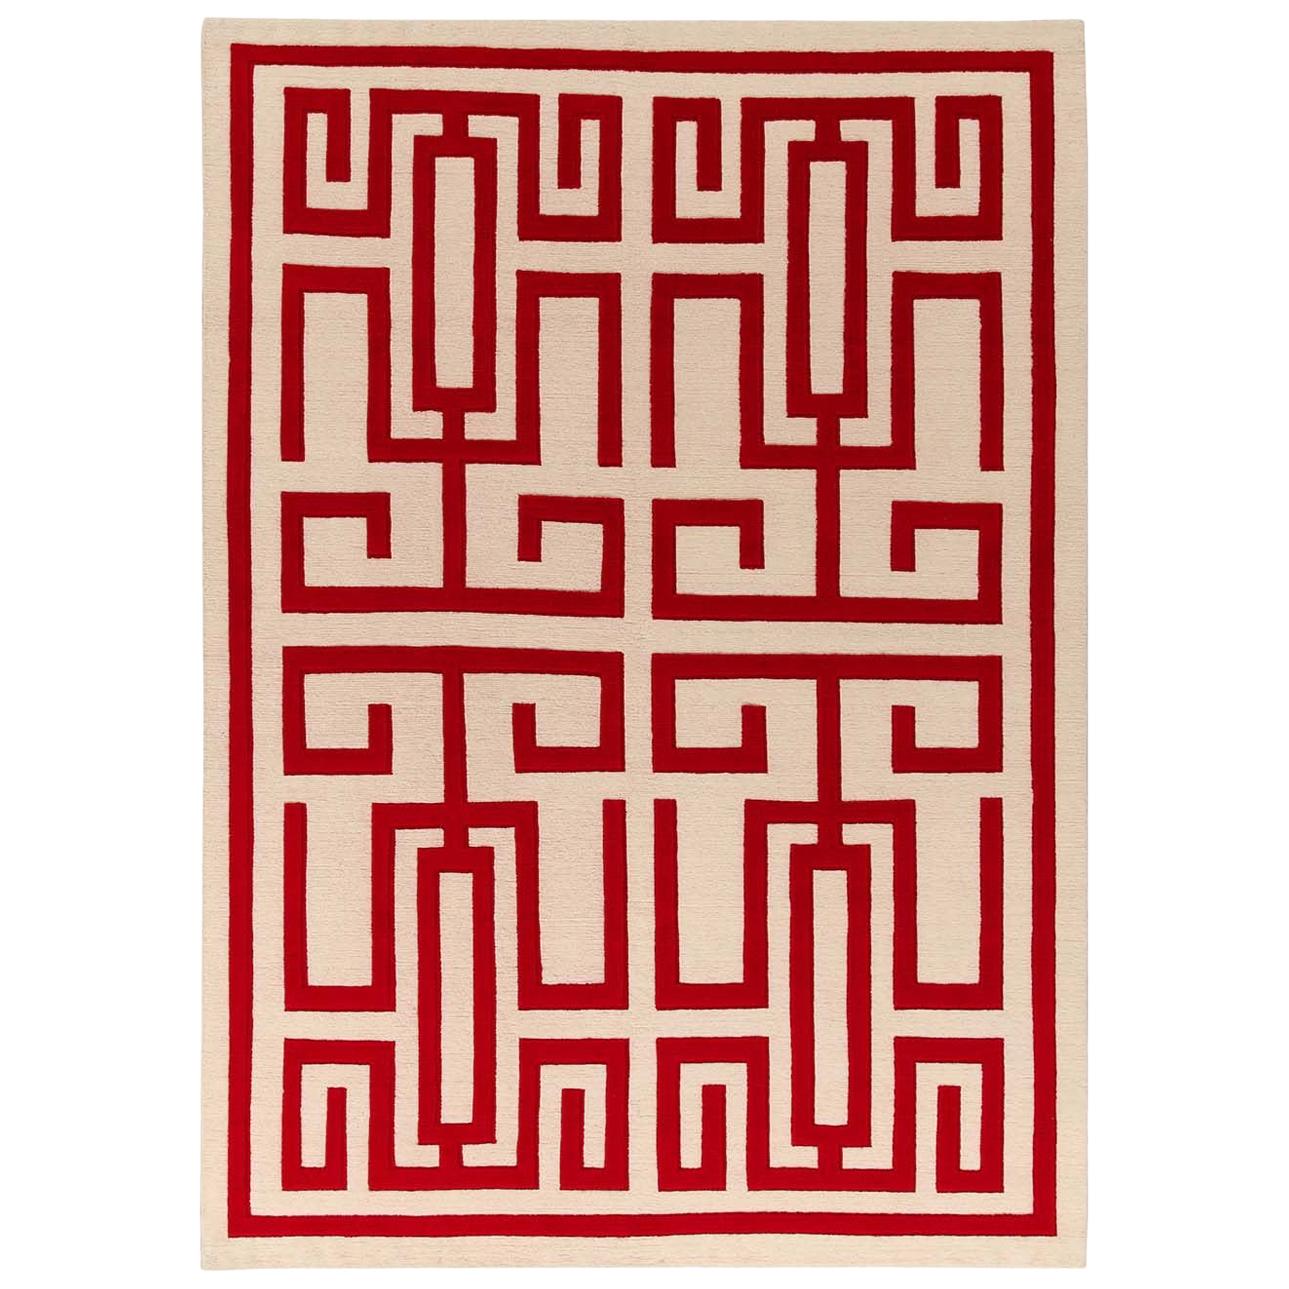 Tapis rouge Labirinto de Gio Ponti